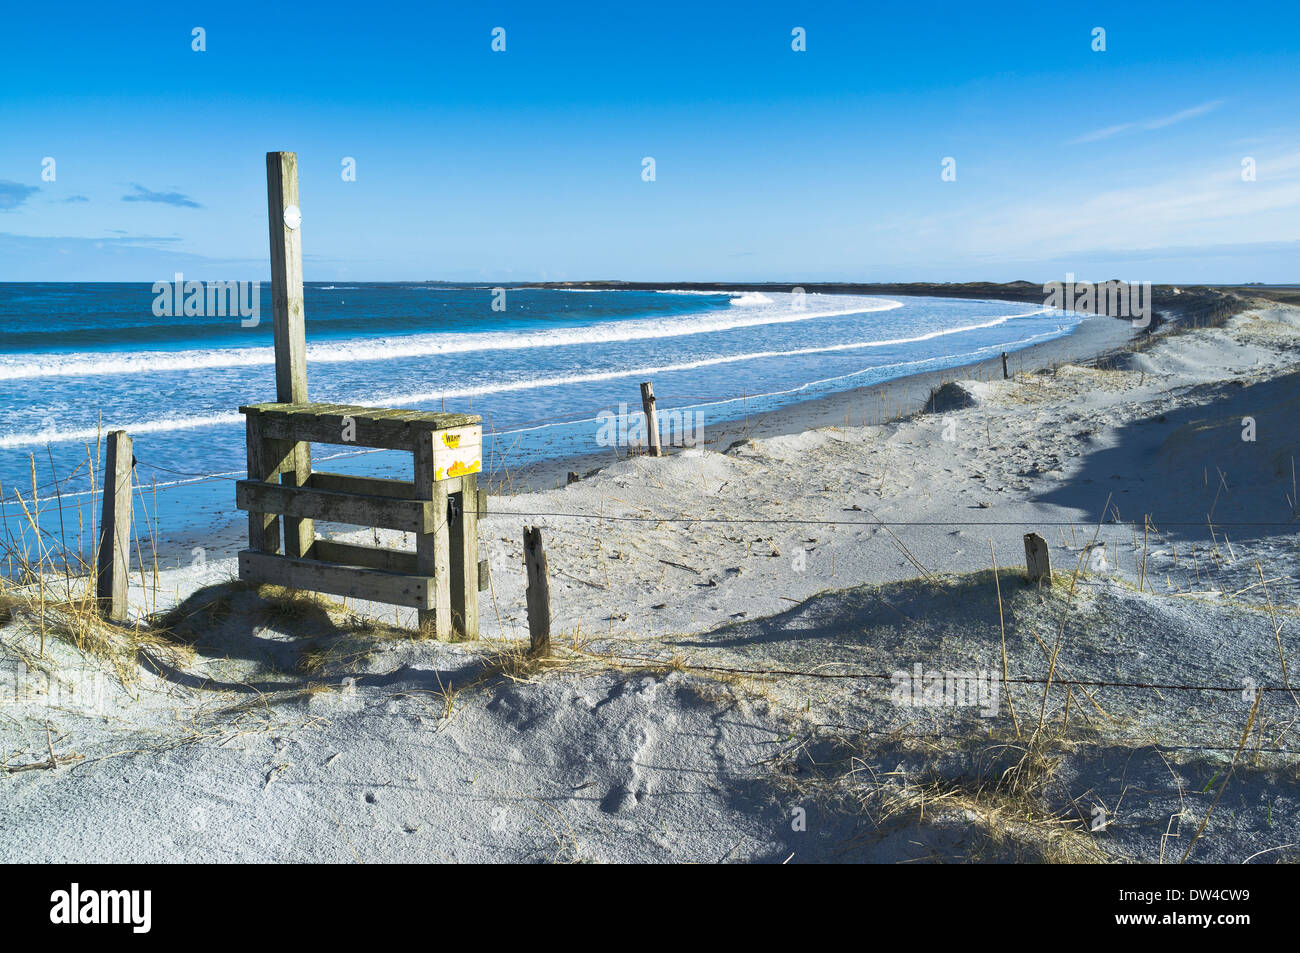 dh Whitemill Bay Beach SANDAY ORKNEY dune de sable côte sentier en bois stile royaume-uni Banque D'Images